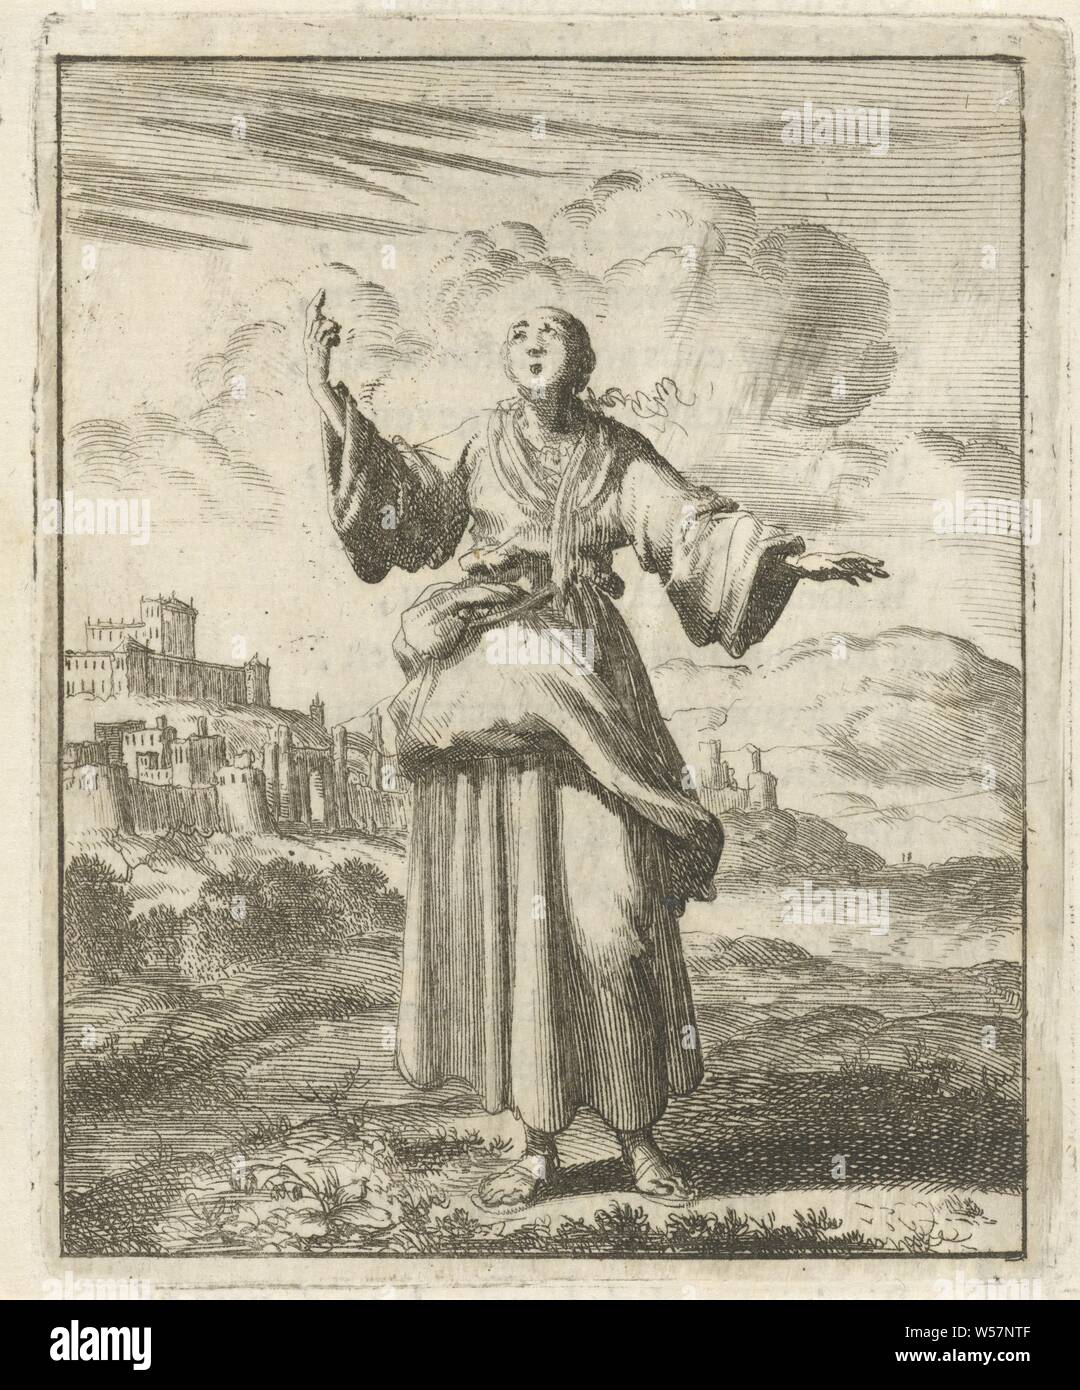 Mujer señalando al cielo ni mucho ni wyt, pero ahí está, el firmamento, el cielo, Jan Luyken, Amsterdam, 1687, el papel, la tipografía, h 96 mm × 77 mm w Foto de stock